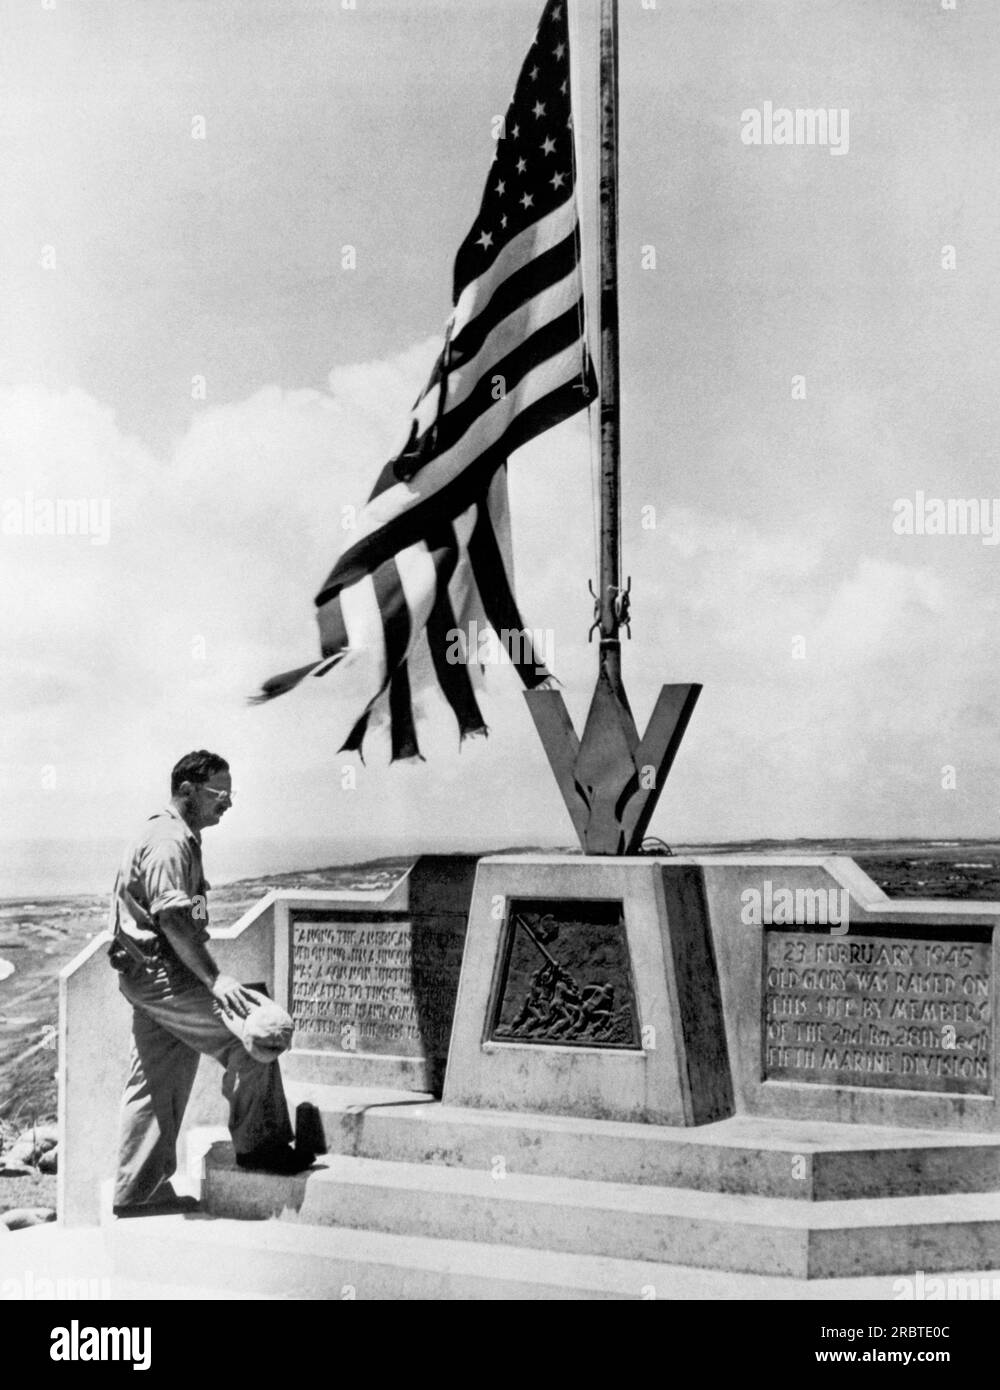 Iwo Jima, Japon : 8 juillet 1946 Joe Rosenthal, photographe de la Seconde Guerre mondiale, qui a fait monter le drapeau historique d'Iwo Jima sur le mont. Suribachi le 23 février 1945, visite le monument sur Iwo Jima qui marque maintenant l'endroit. Banque D'Images